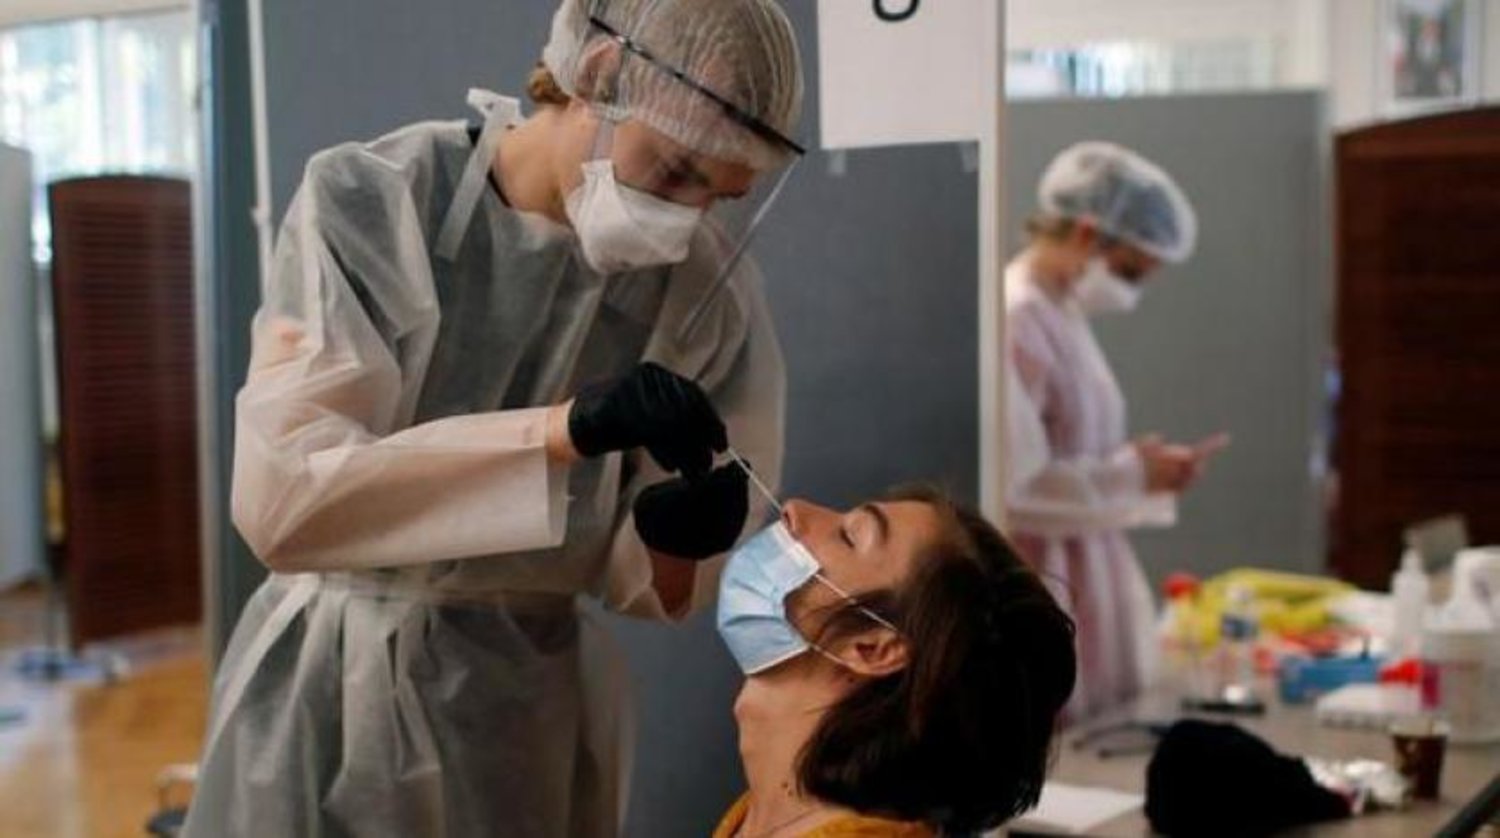 Paris'teki bir hastadan örnek alan sağlık görevlisi koruyucu kıyafet ve yüz maskesi takıyor (Reuters)
